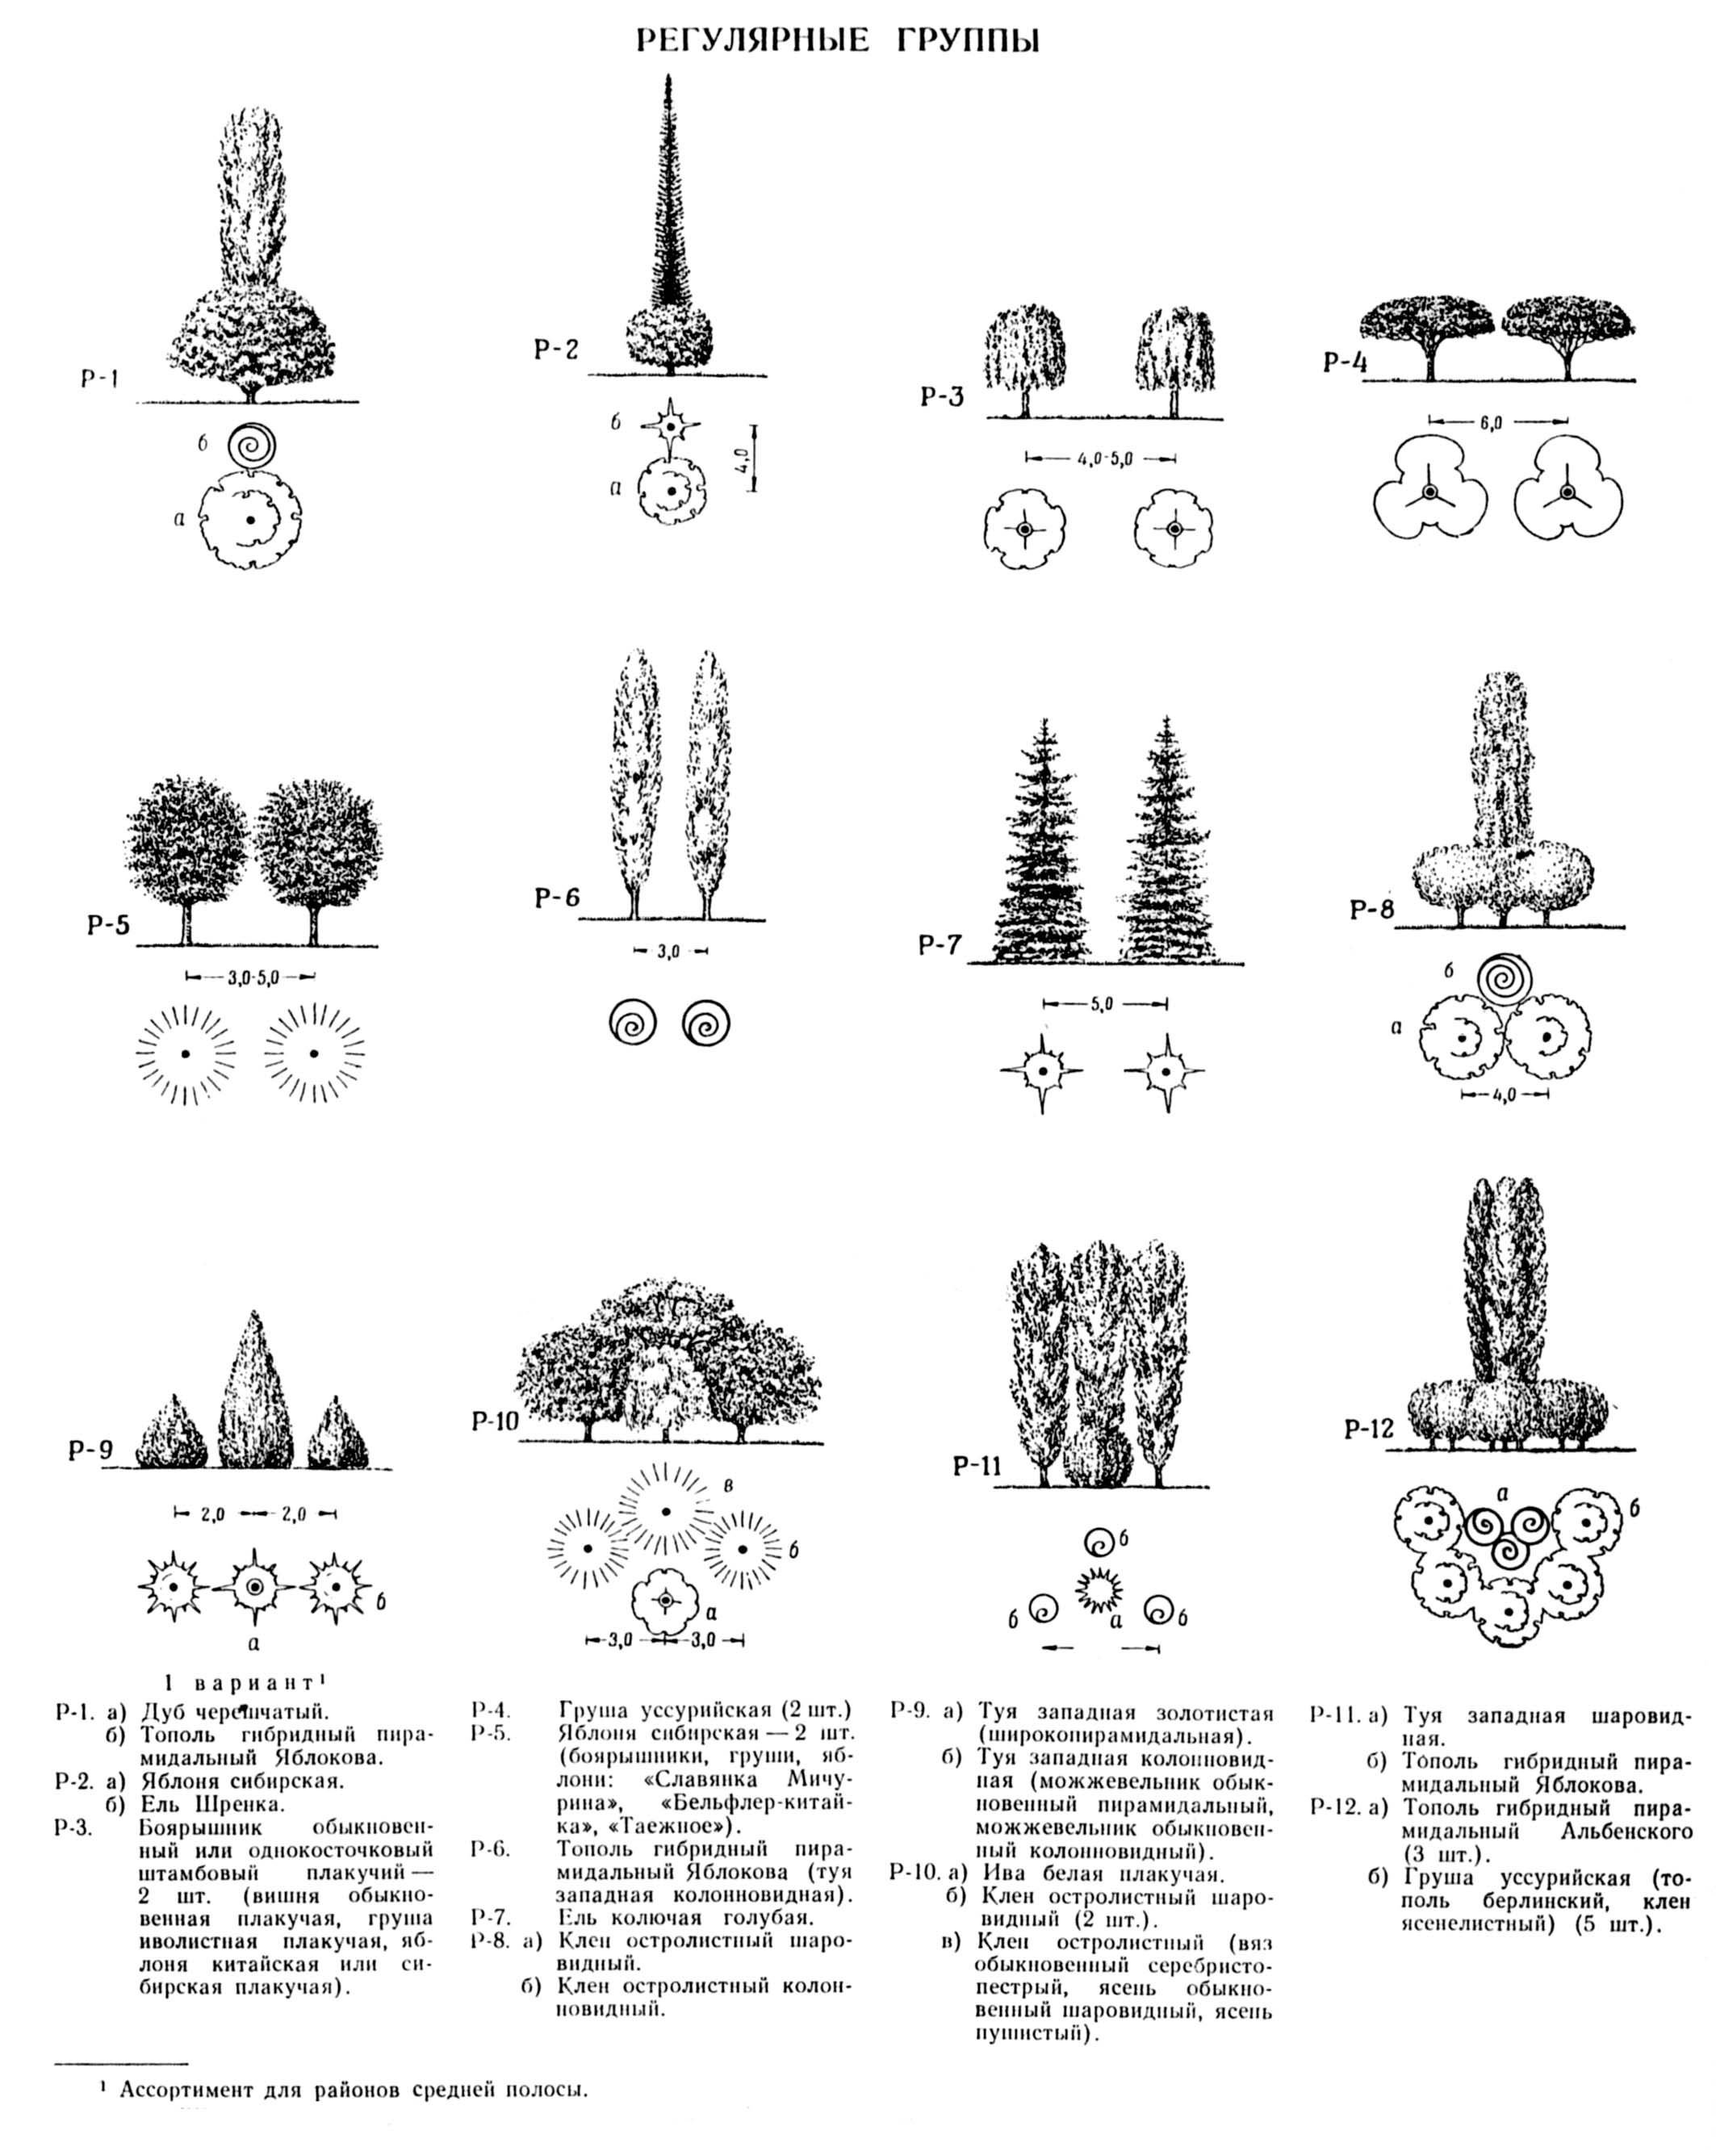 Три группы деревьев. Схема древесно кустарниковых насаждений. Древесно кустарниковая группа схема посадки. Схема посадки хвойных деревьев. Композиции древесно-кустарниковых насаждений.